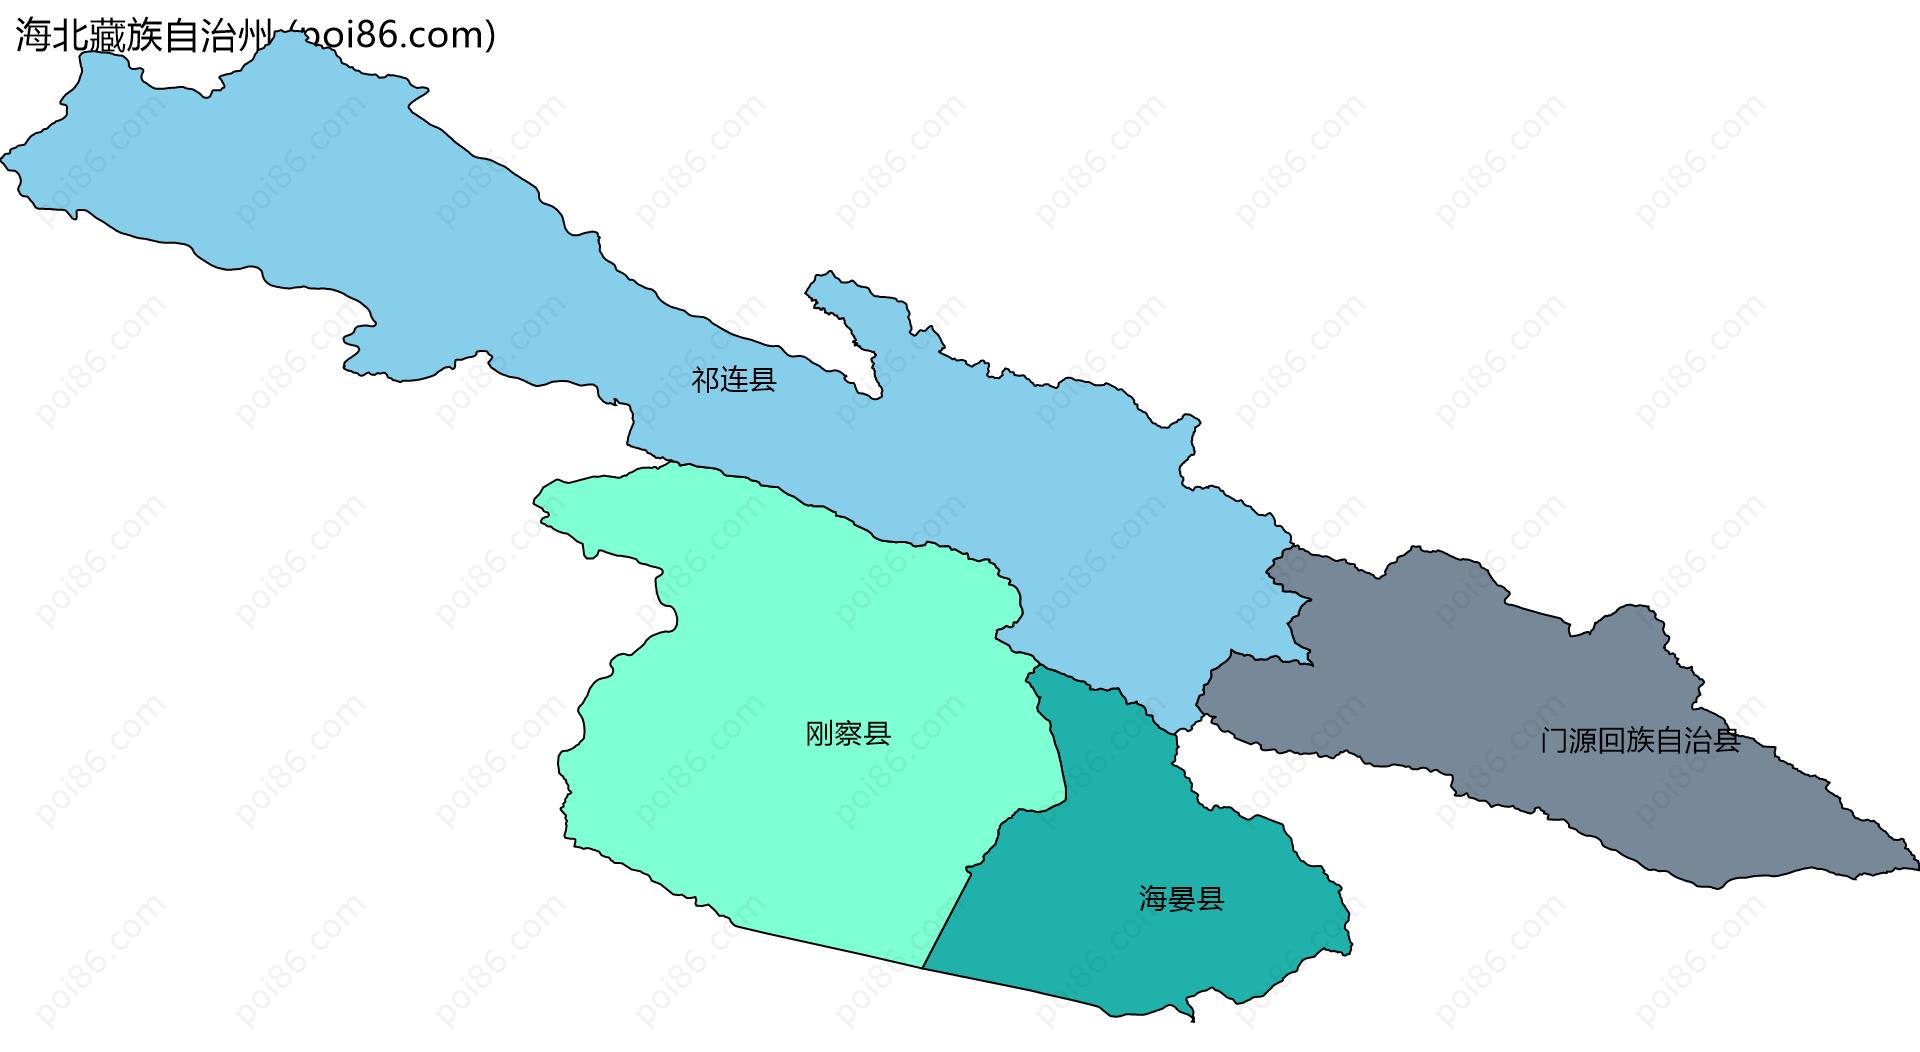 海北藏族自治州边界地图